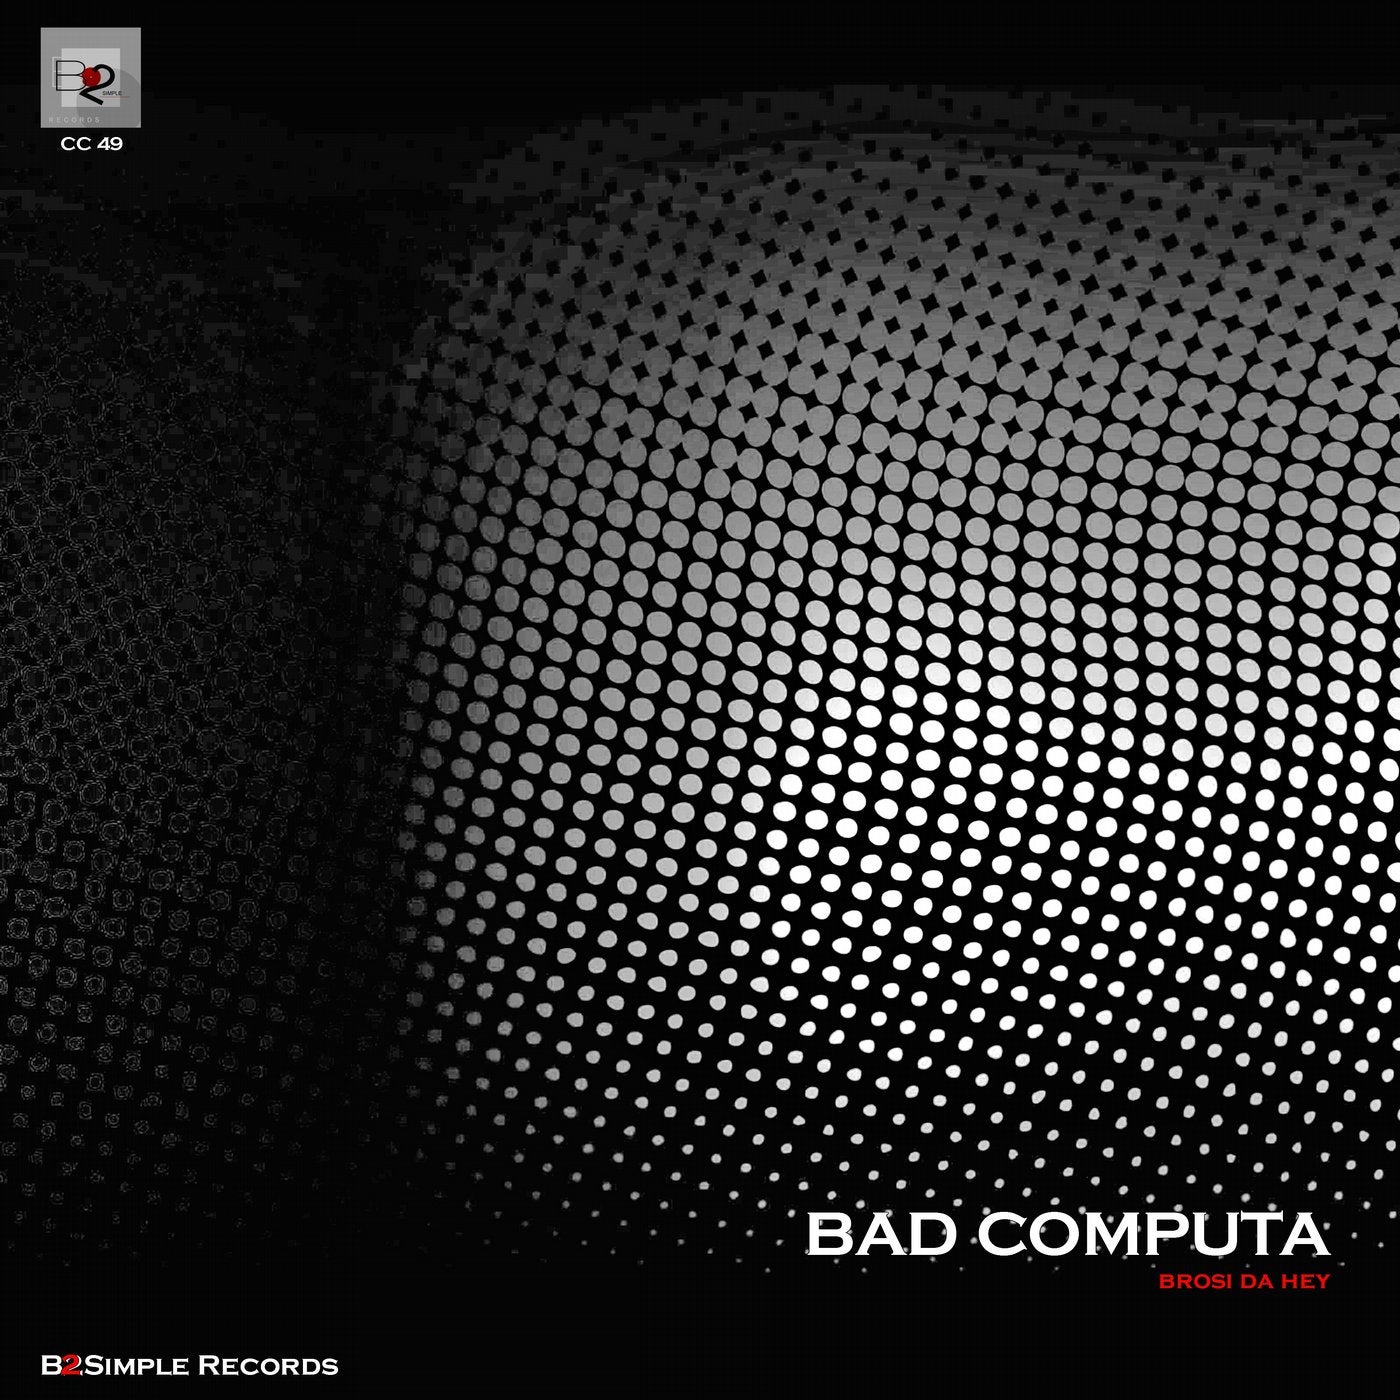 Bad Computa